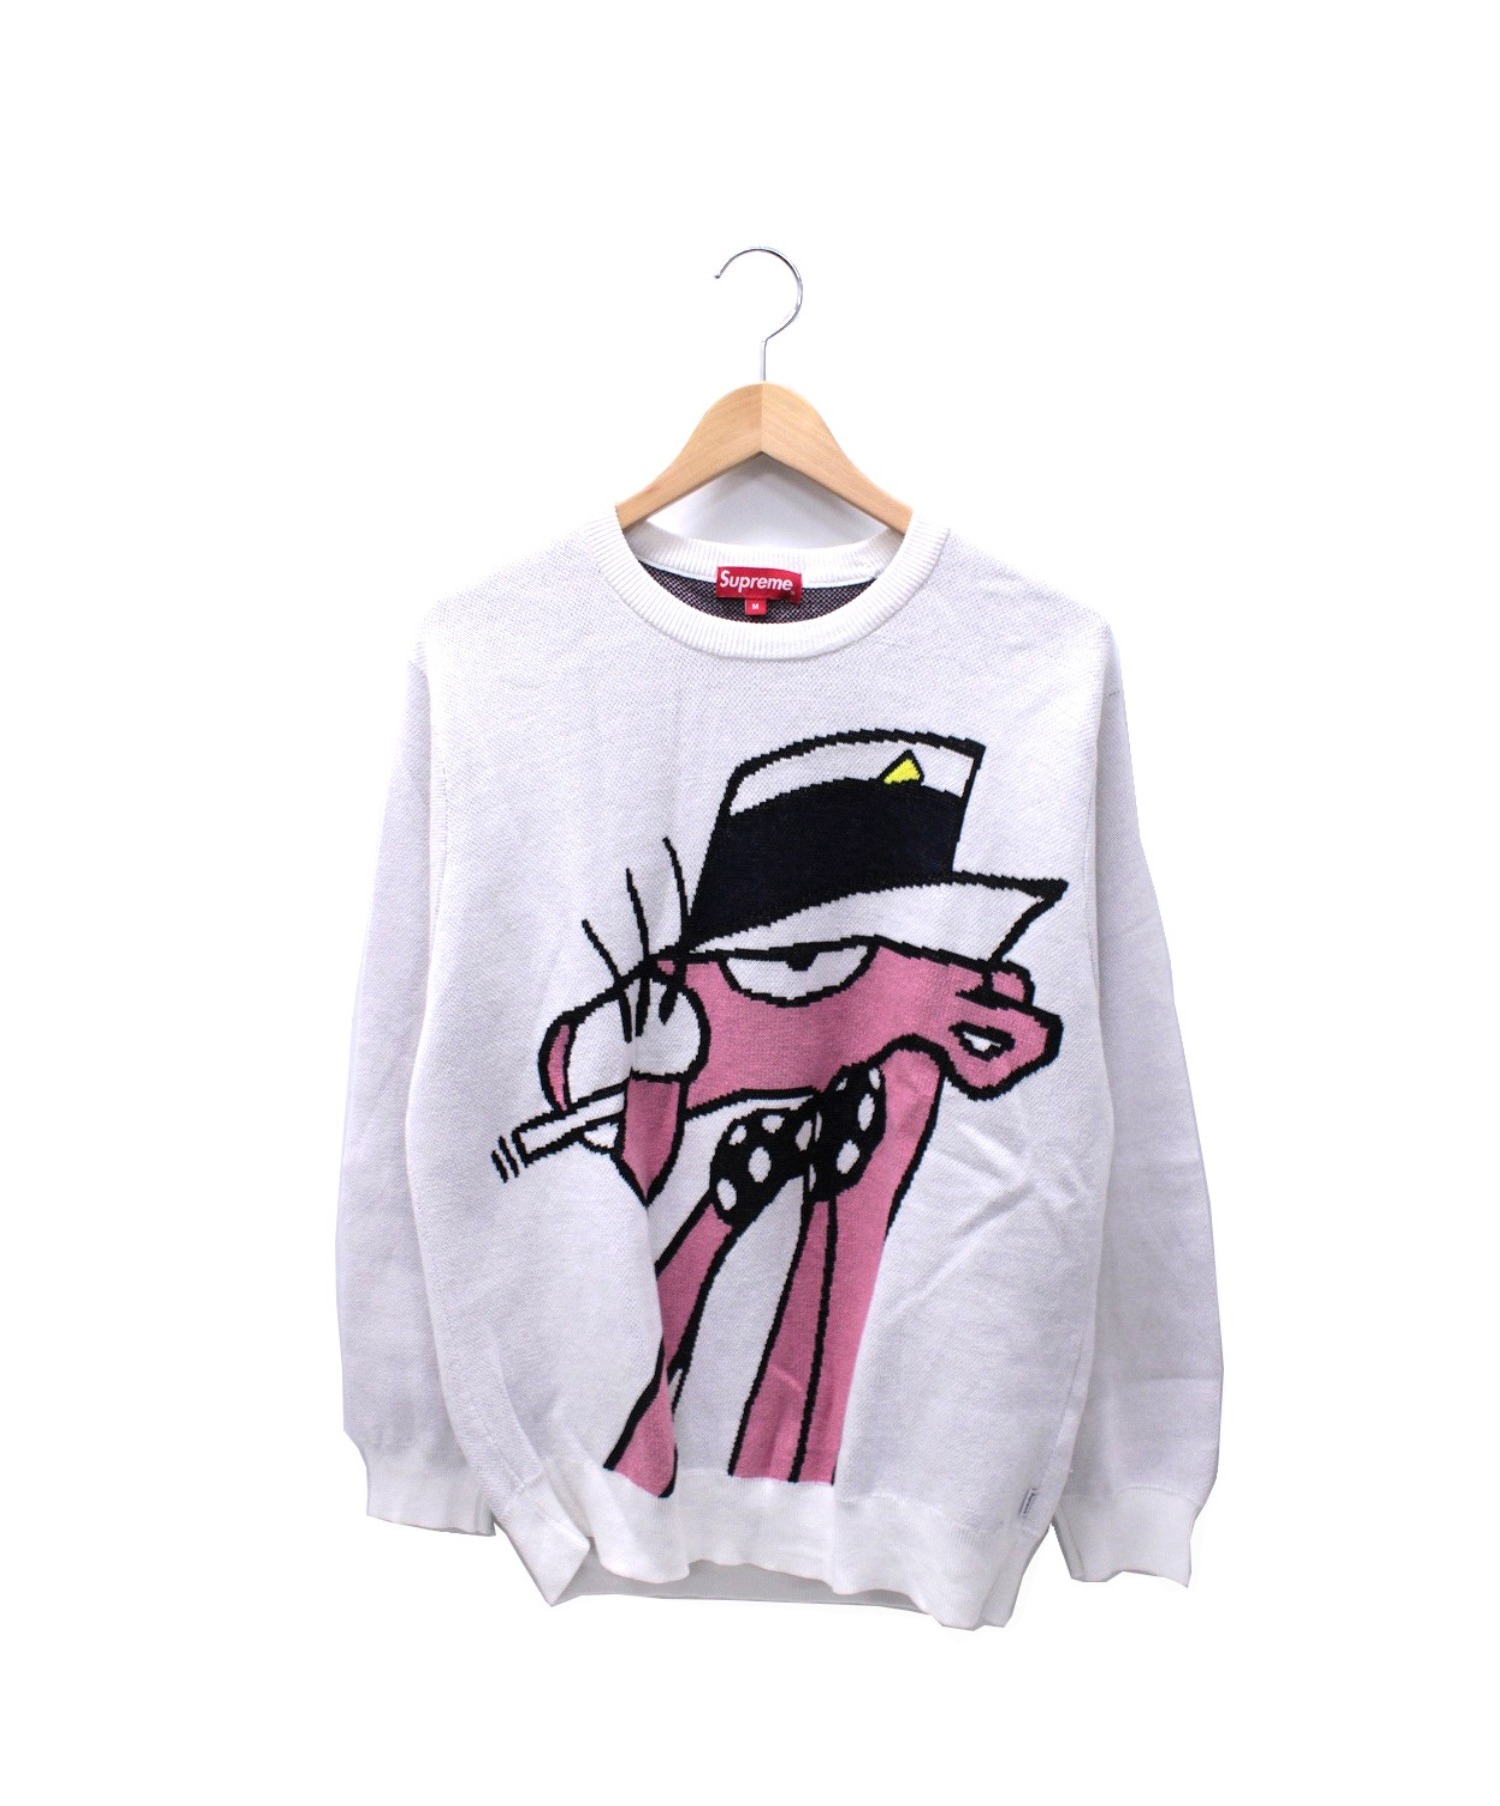 中古 古着通販 Supreme Pink Panther シュプリーム ピンクパンサー ピンクパンサーセーター ホワイト サイズ M 14ss Pink Panther Sweater ブランド 古着通販 トレファク公式 Trefac Fashion